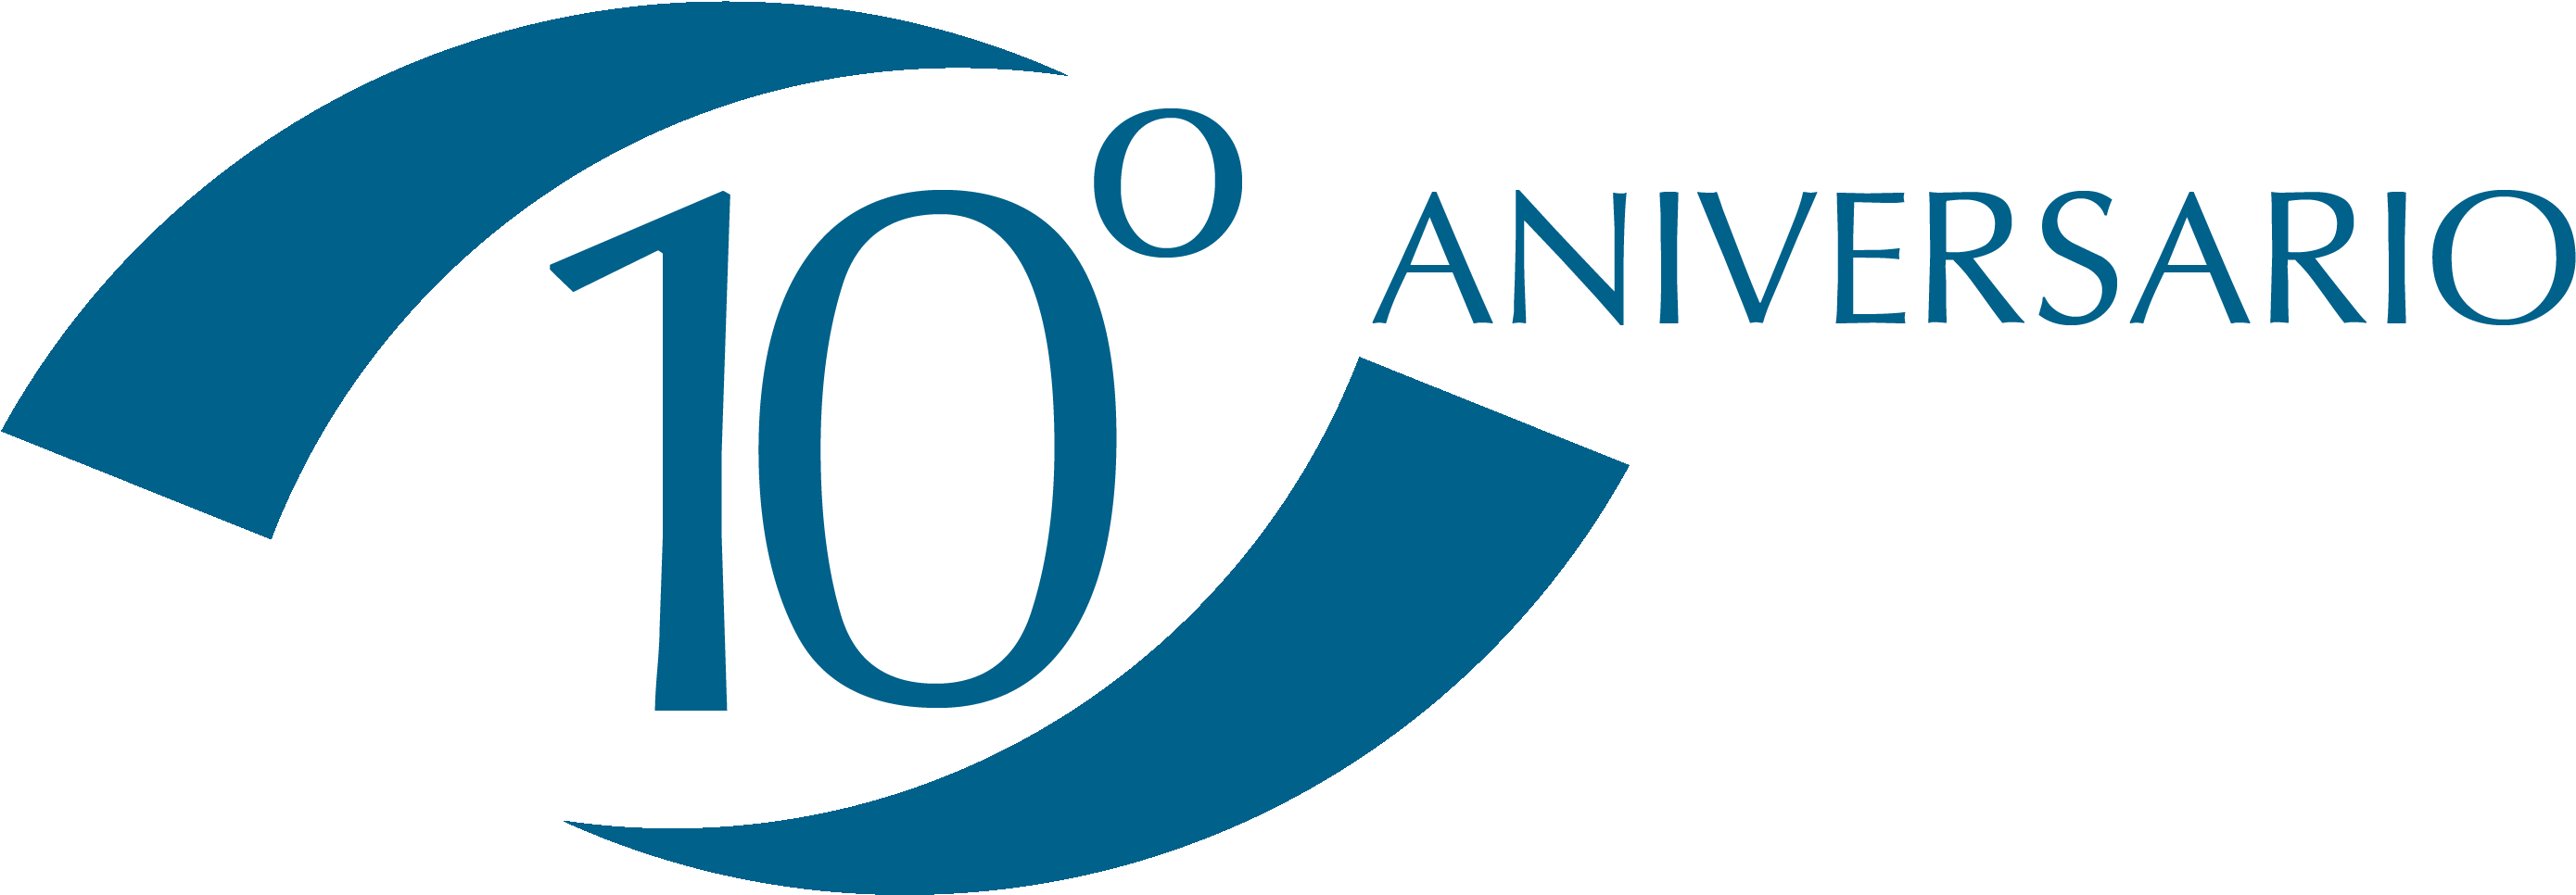 10 Aniversario Logo - Ntra Sra De La Asuncion (2973x1165), Png Download